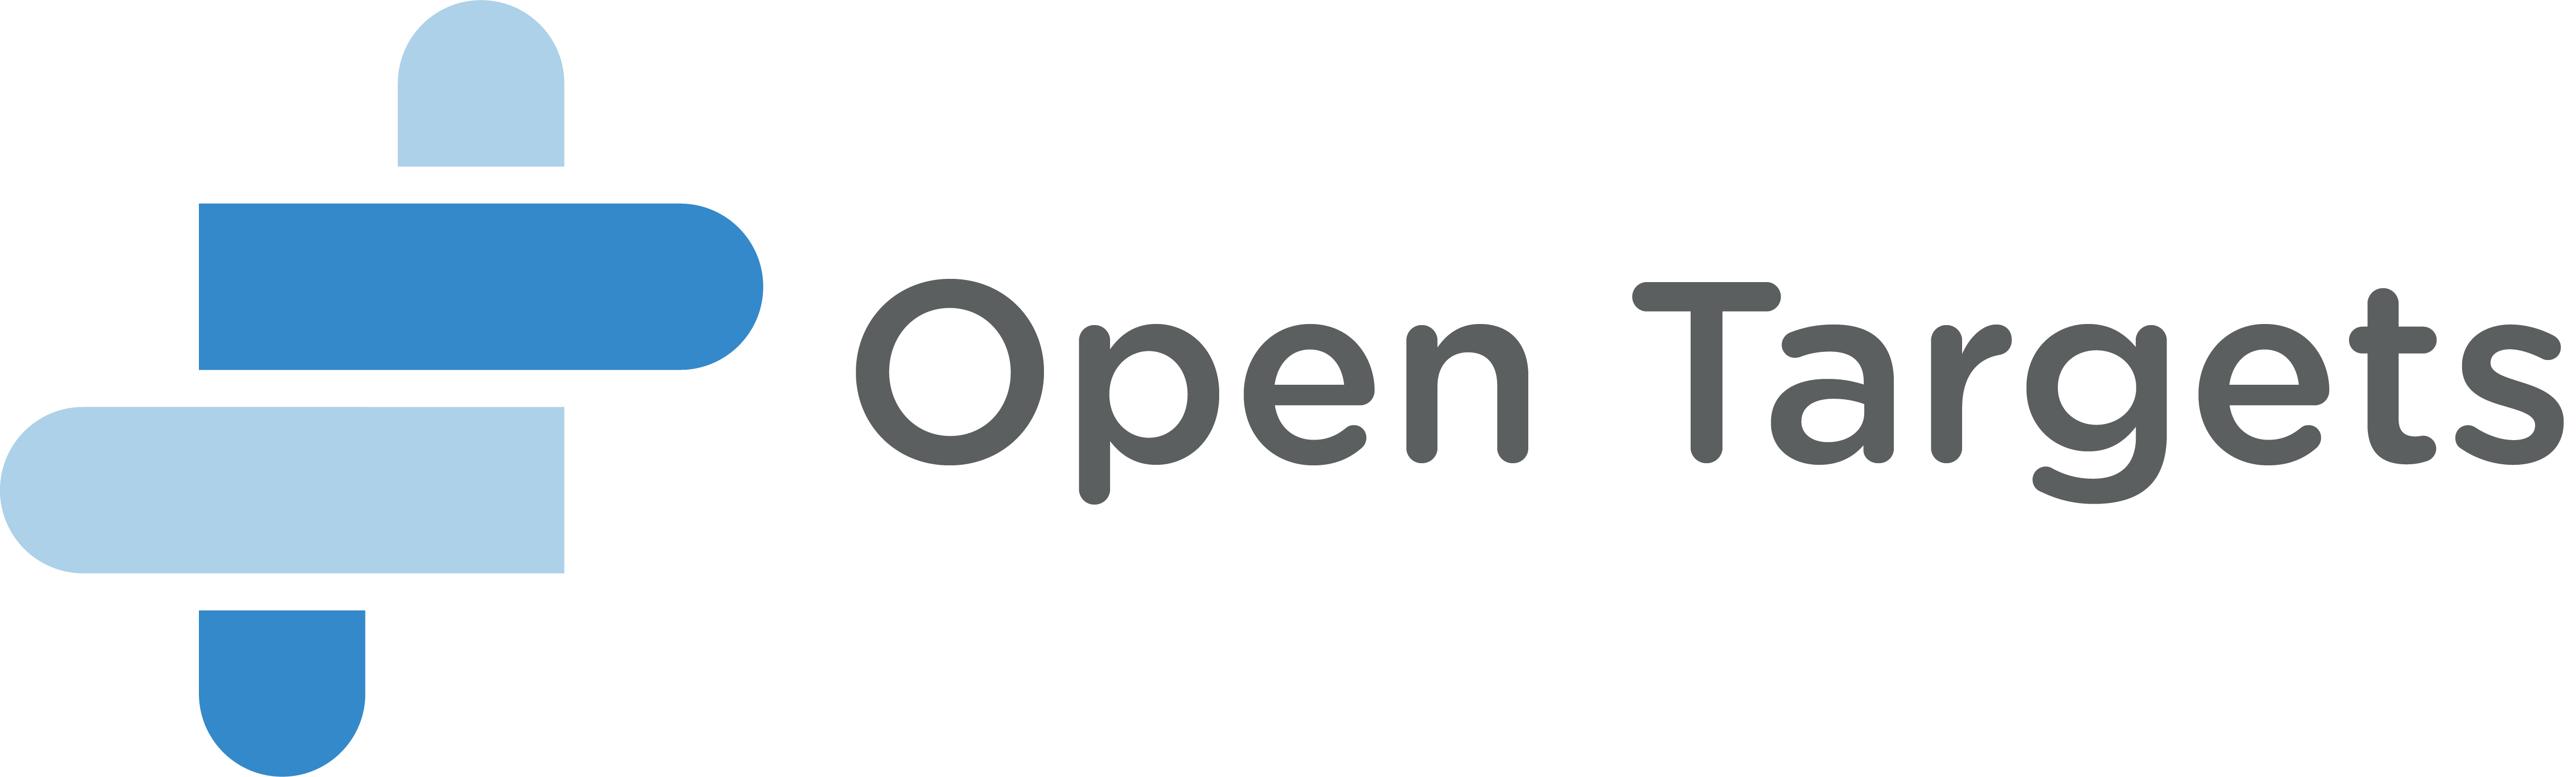 Open Targets helix logo and wordmark